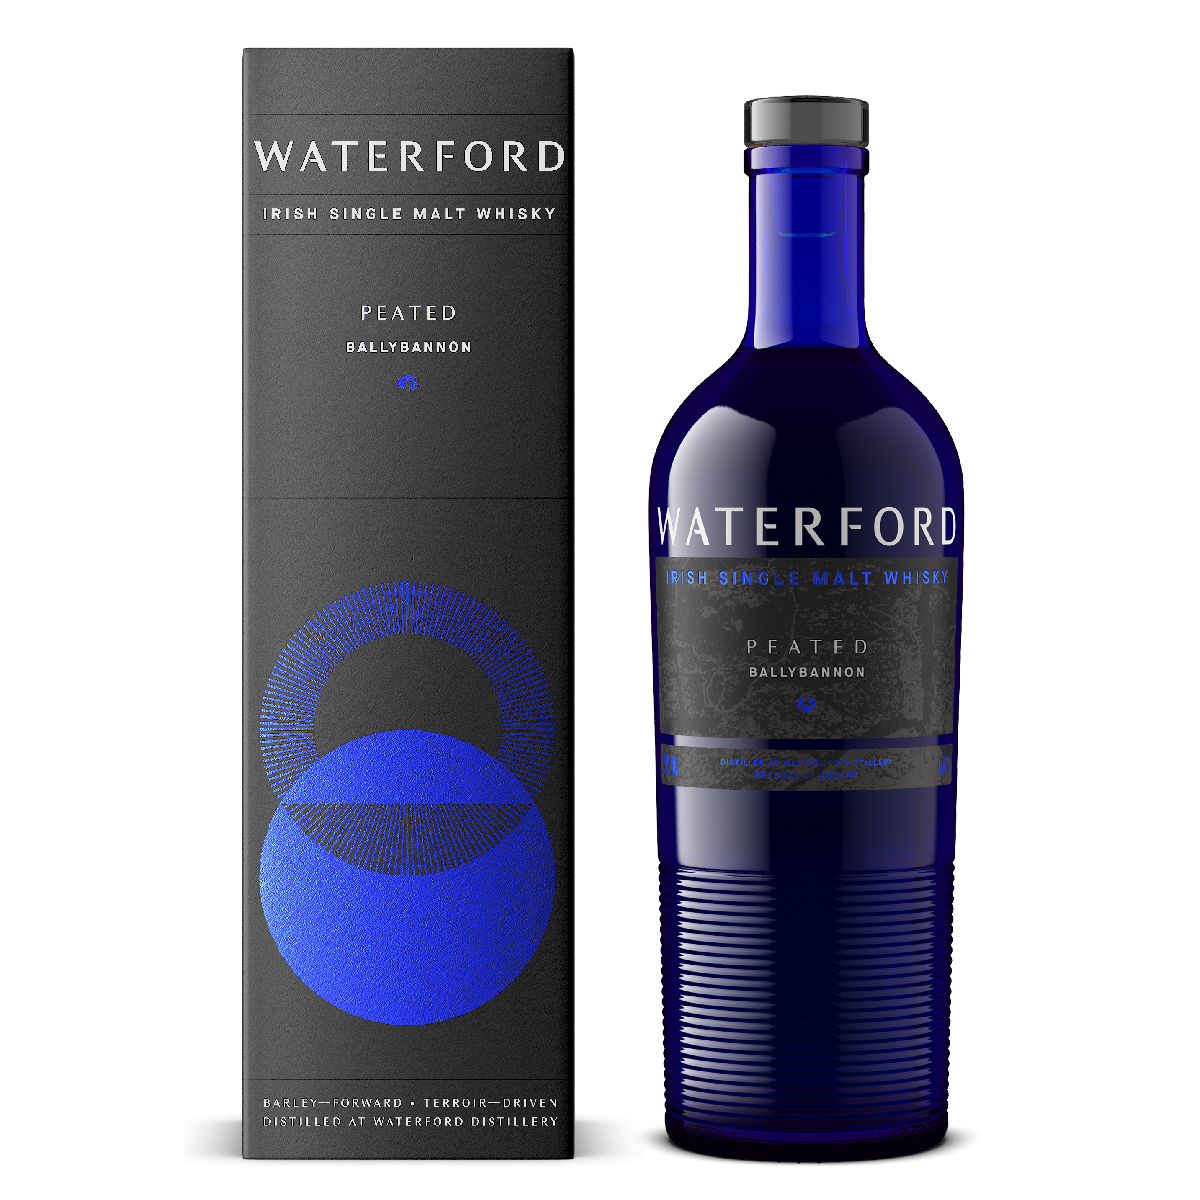 Waterford Irish Single Malt Whisky Peated Ballybannon 700ml